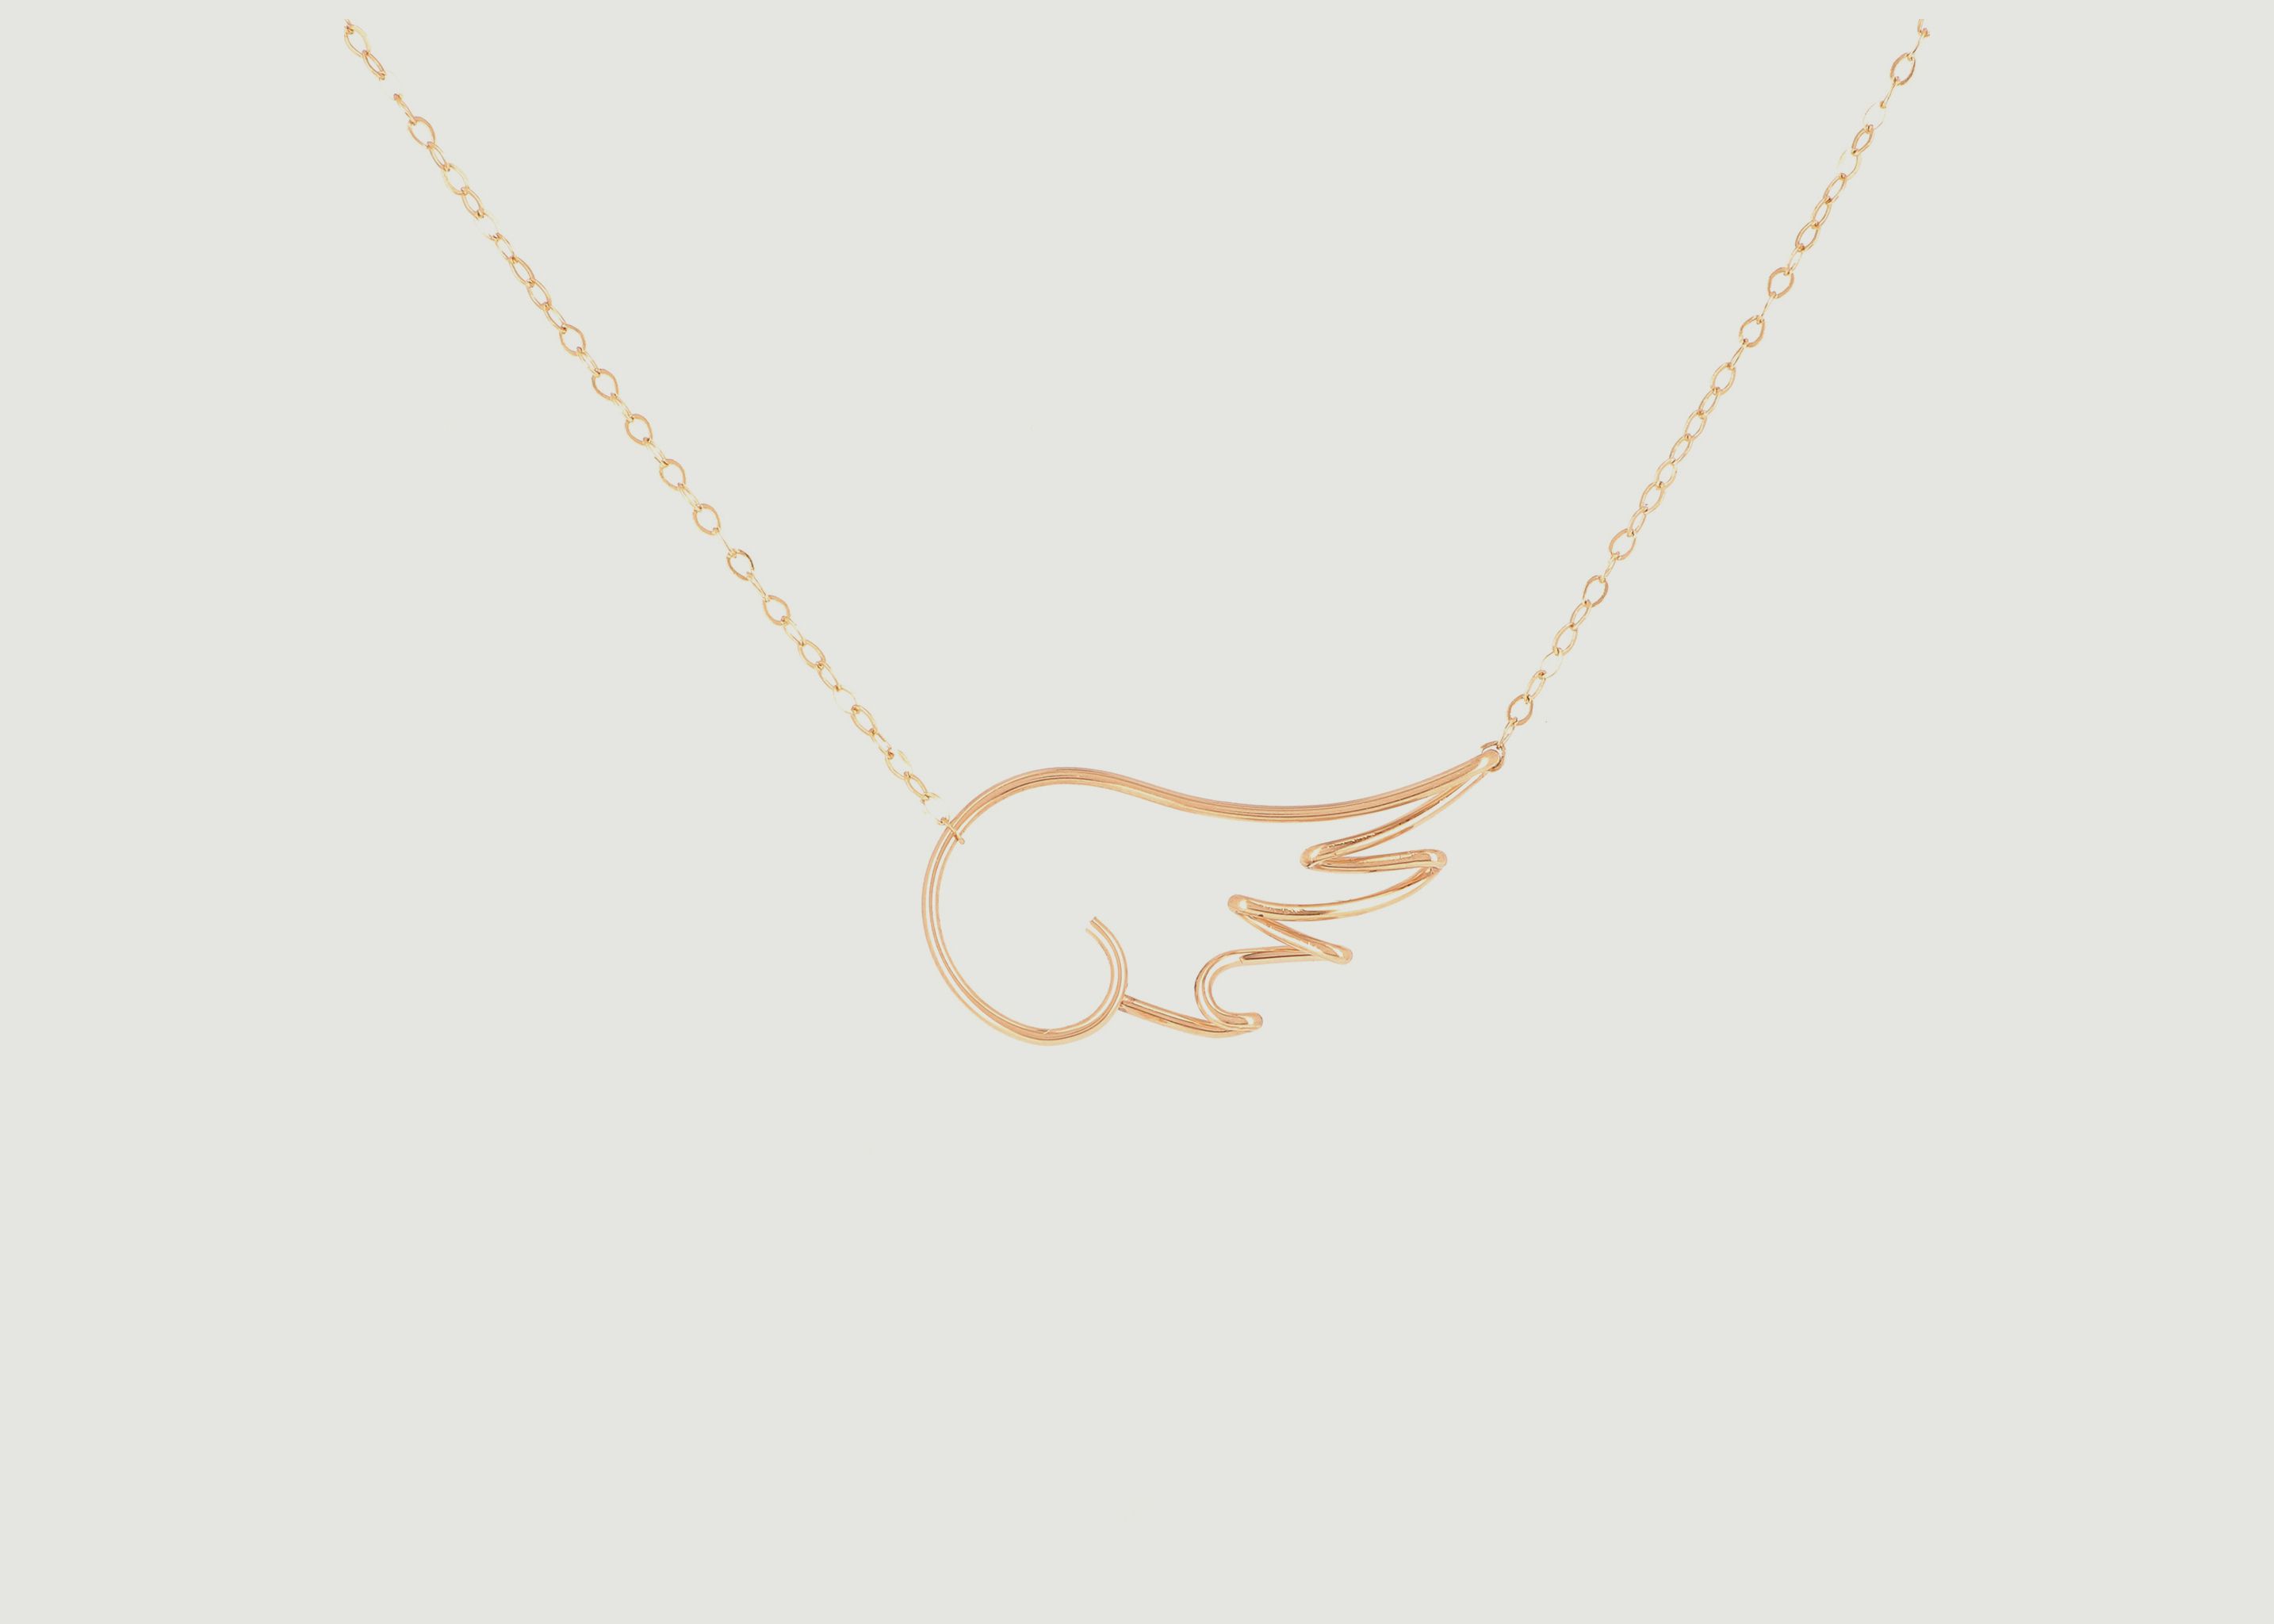 Mon Ange x Jean Cocteau chain necklace with pendant - Atelier Paulin